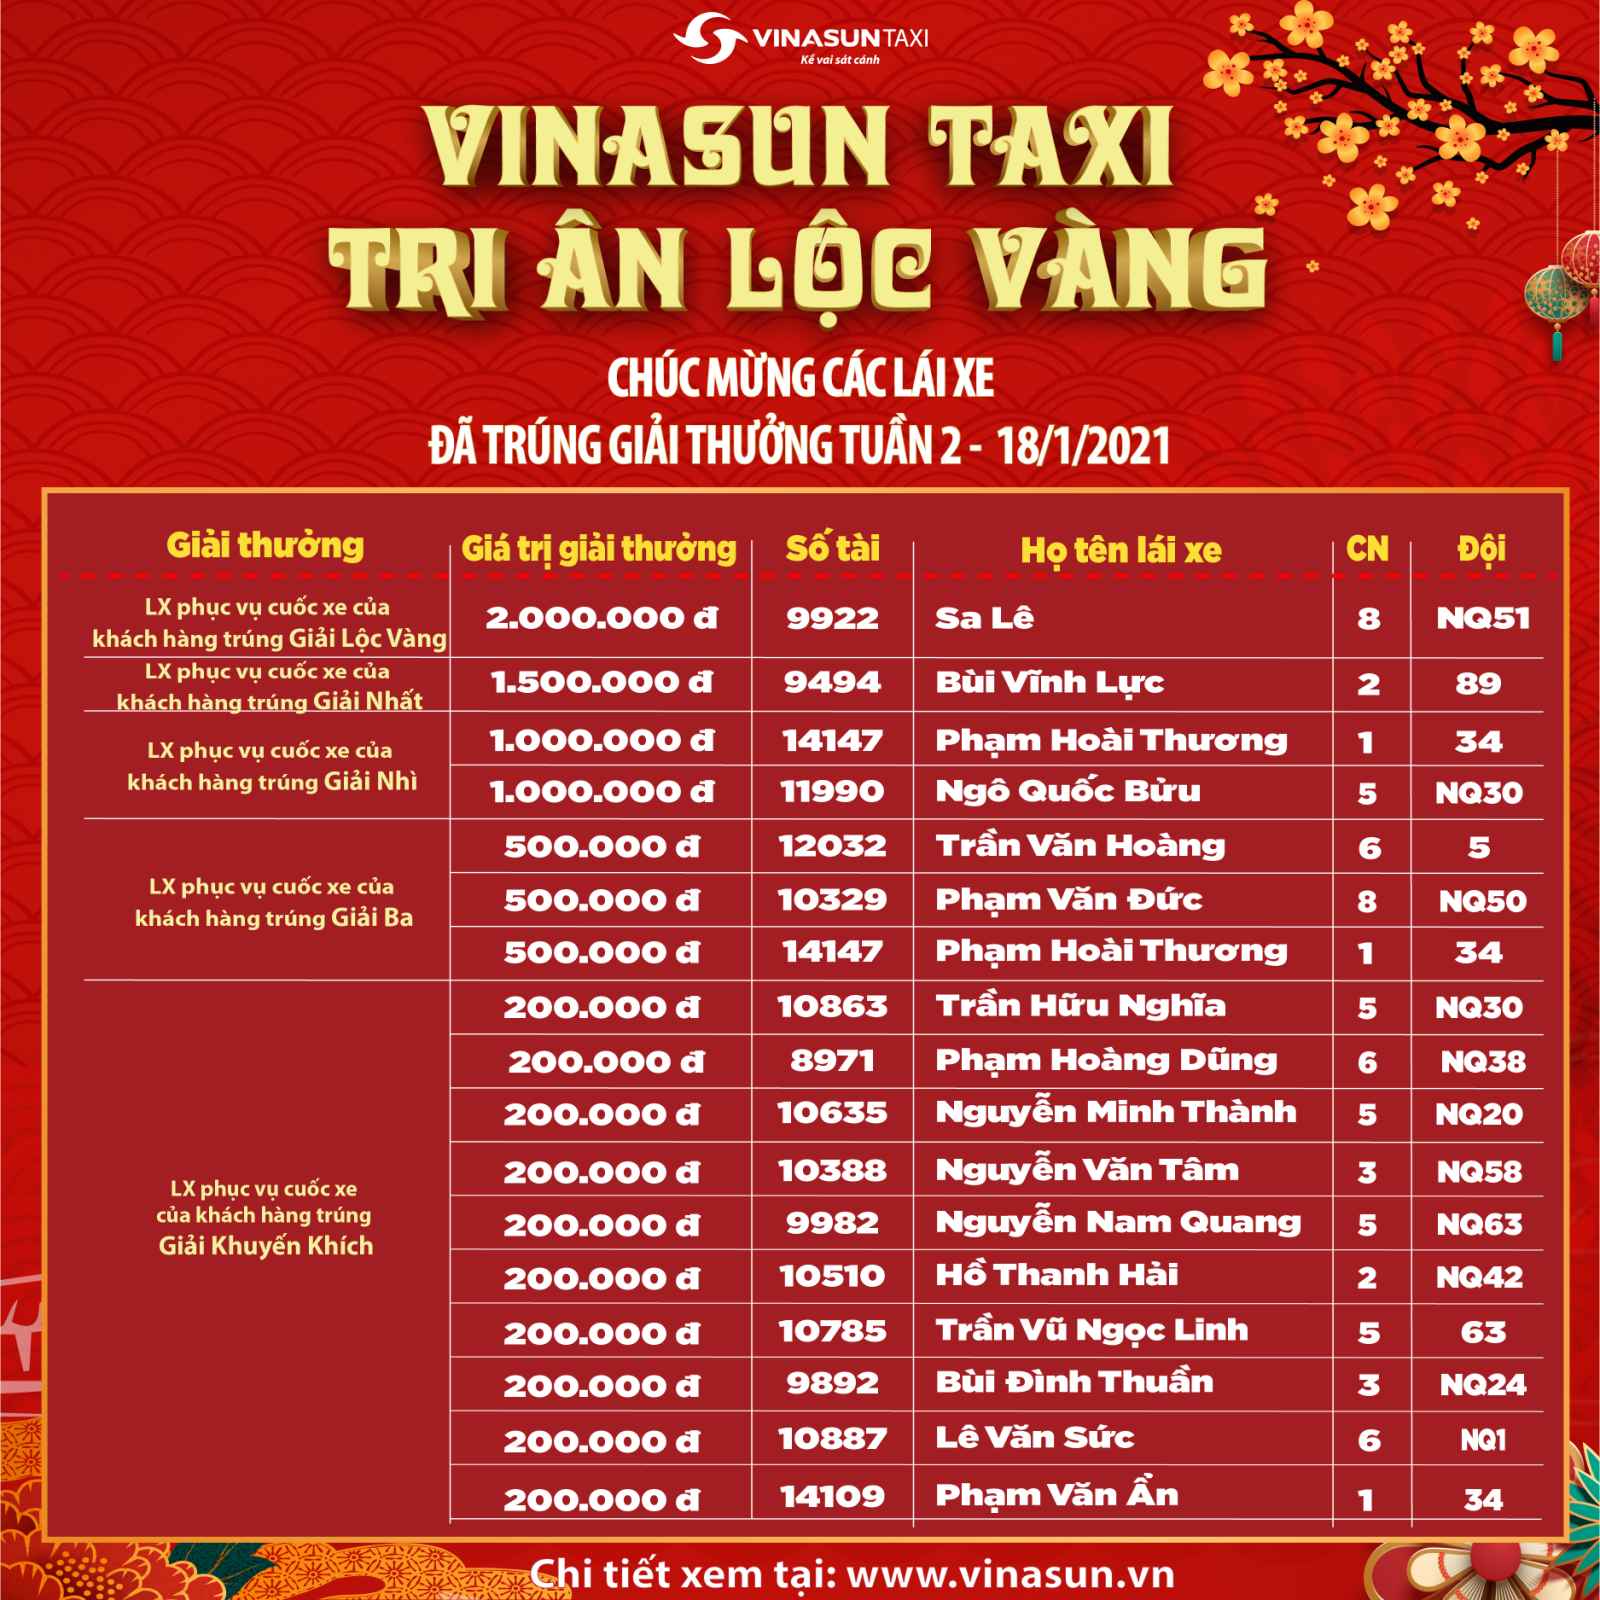 Kết quả Vinasun Taxi - Tri ân lộc vàng dành cho LÁI XE tuần 2